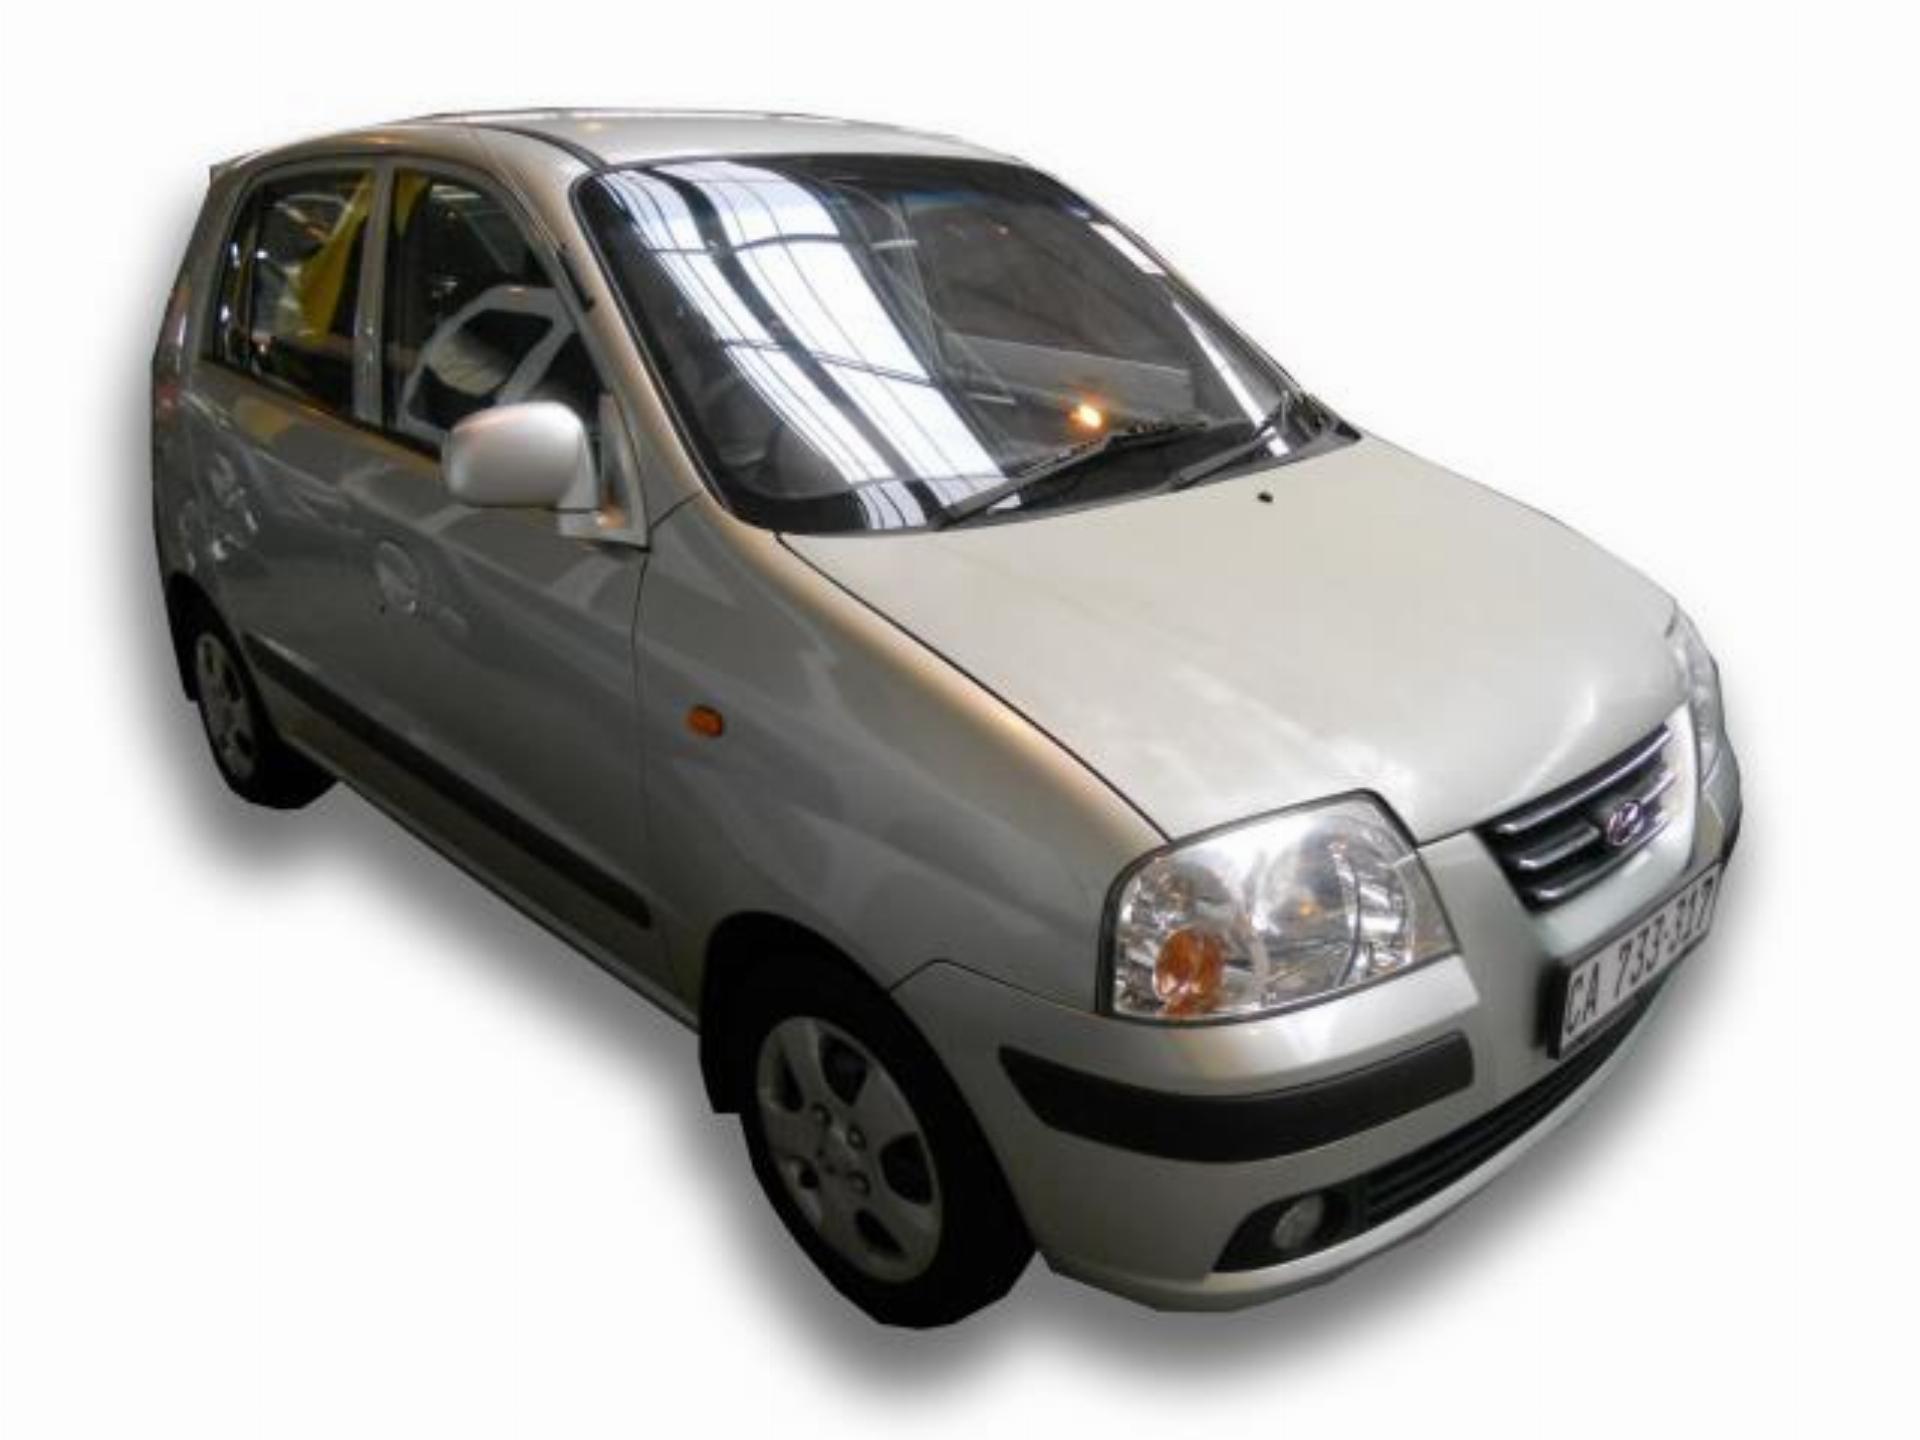 Repossessed Hyundai Atos 1.1 2005 on auction MC15703